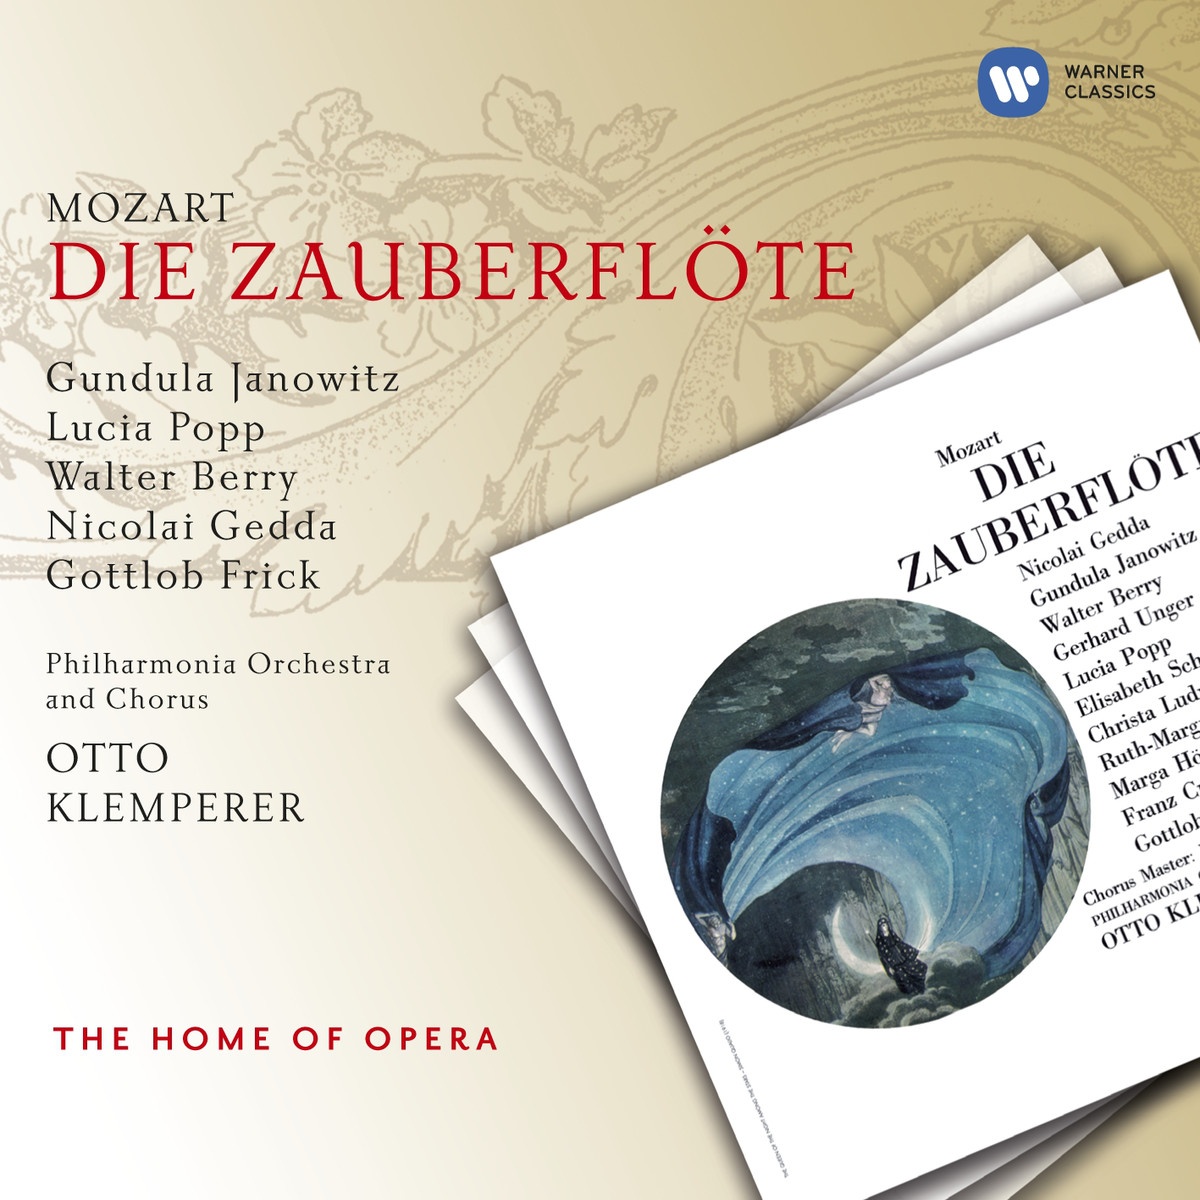 Die Zauberfl te, ' The Magic Flute' K620 2000 Digital Remaster, ACT 2: Arie: Alles fü hlt der Liebe Freuden Monostatos